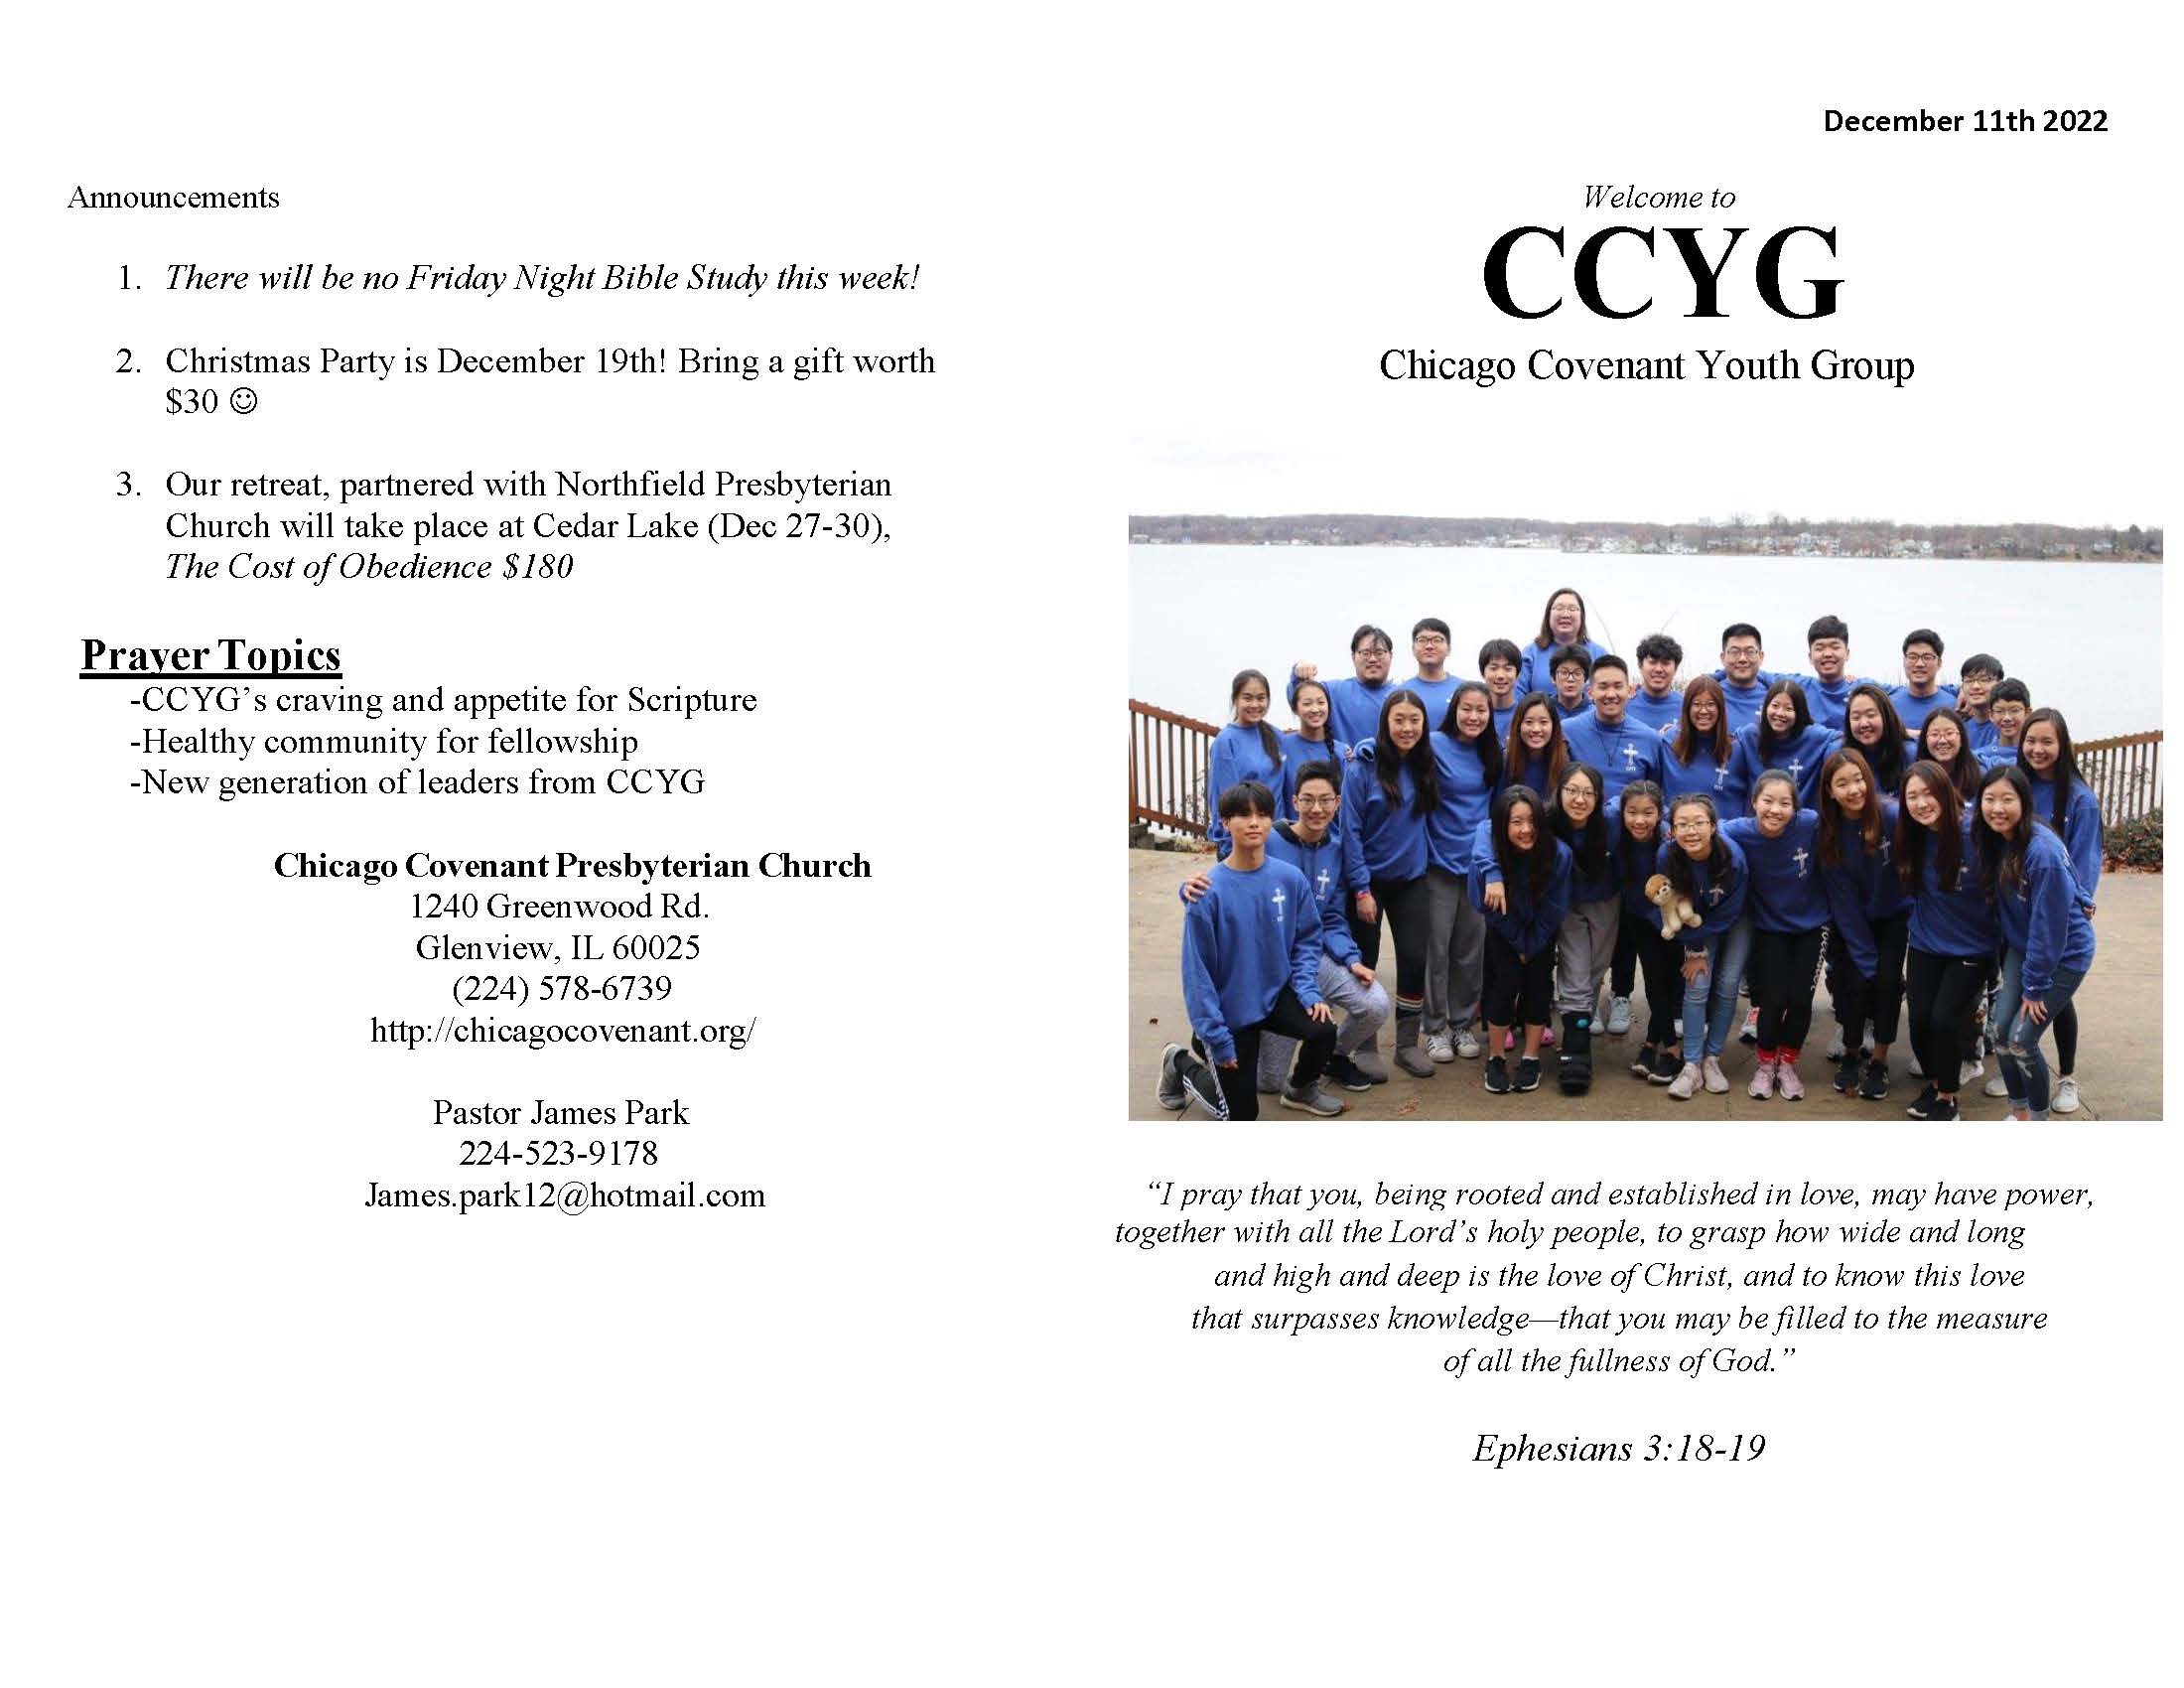 CCYG Bulletin 121122_Page_1.jpg